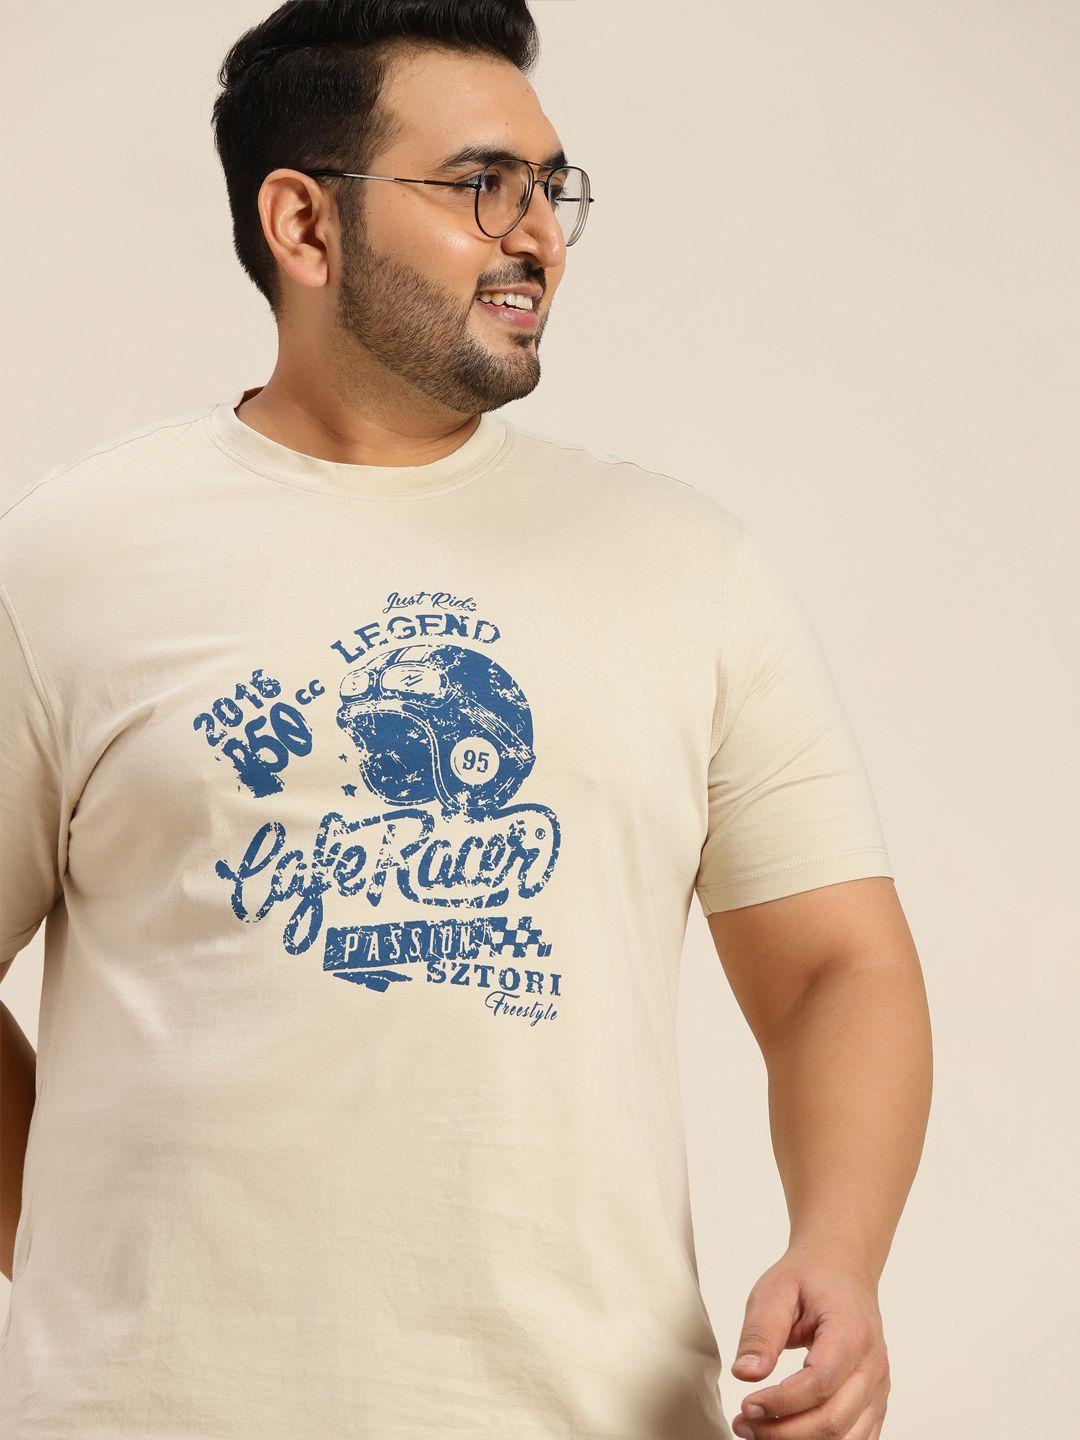 sztori men plus size beige & blue graphic printed pure cotton t-shirt